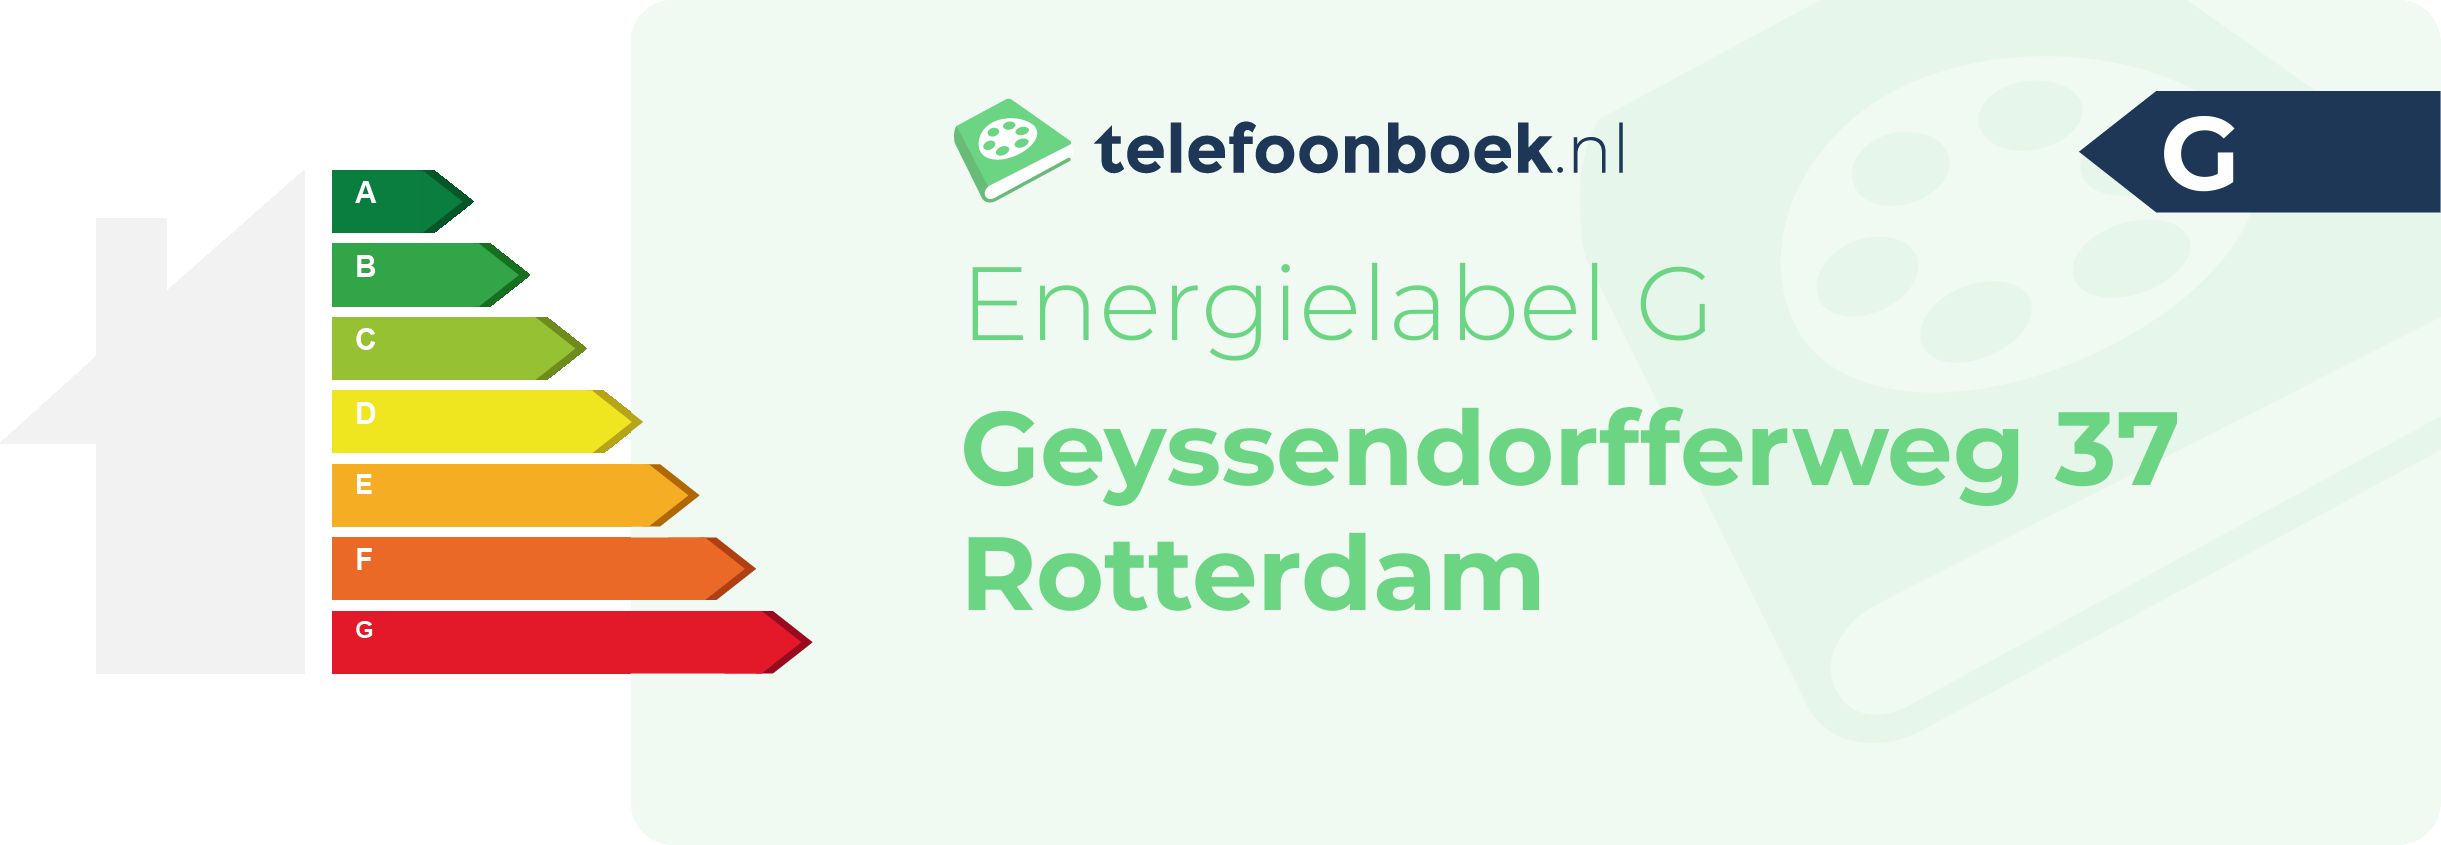 Energielabel Geyssendorfferweg 37 Rotterdam